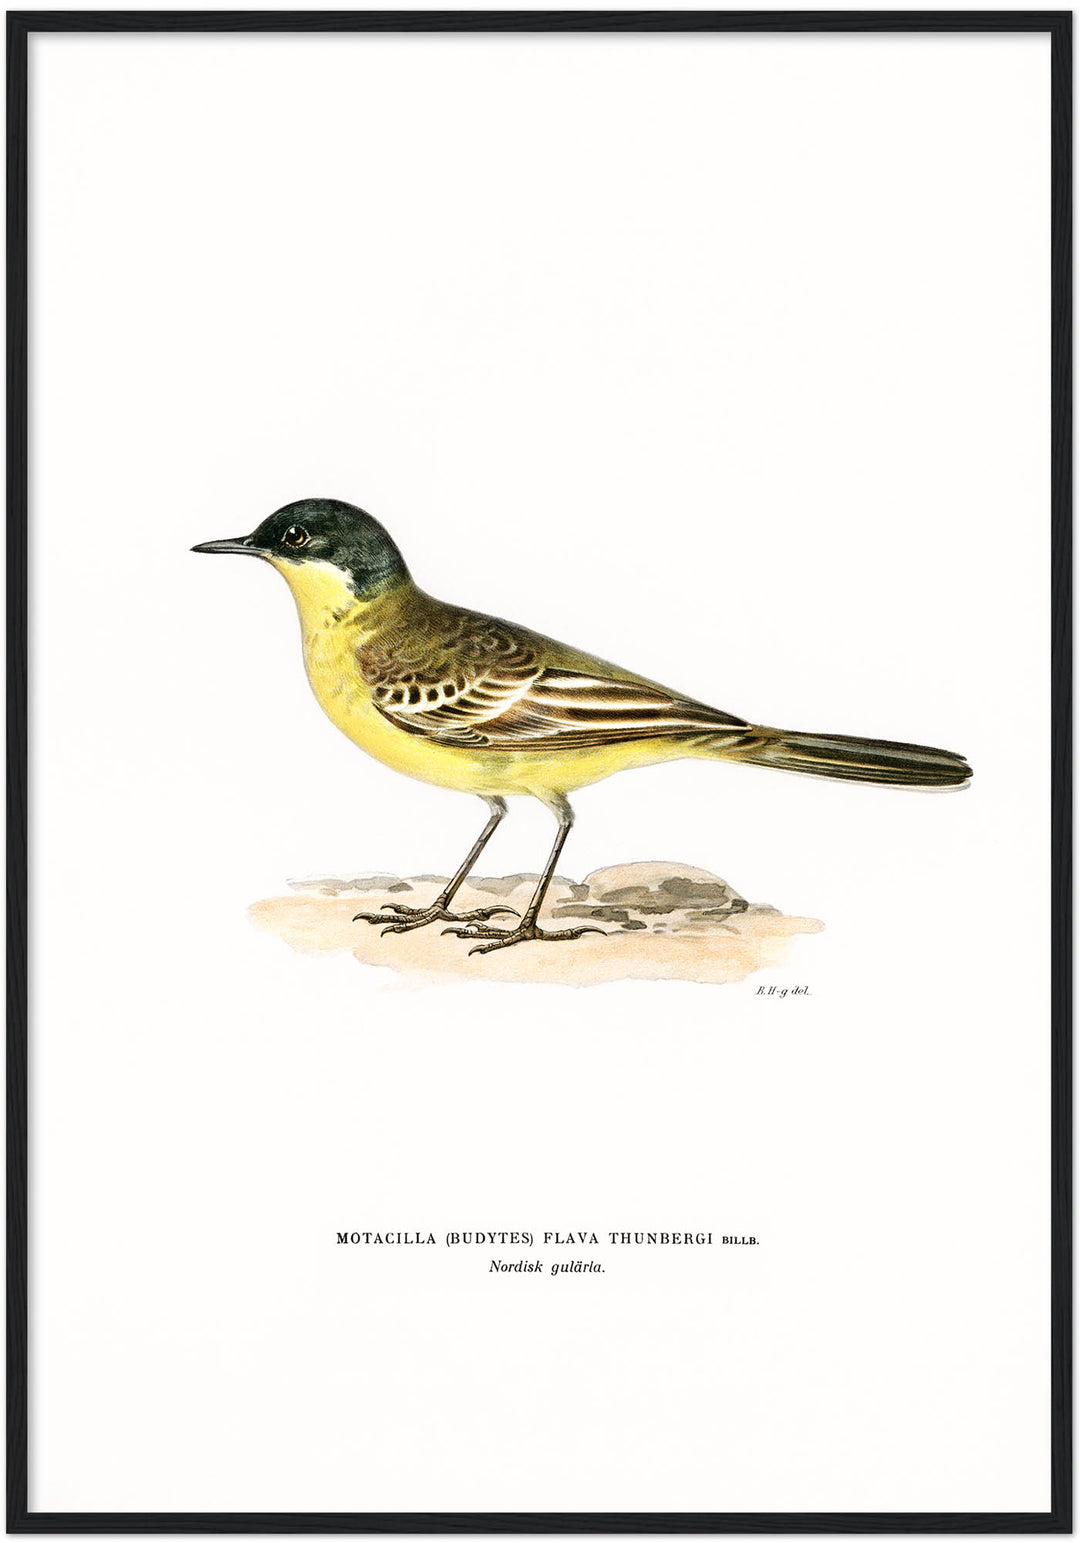 Fågeln Nordisk gulärla på klassisk vintage poster/affisch